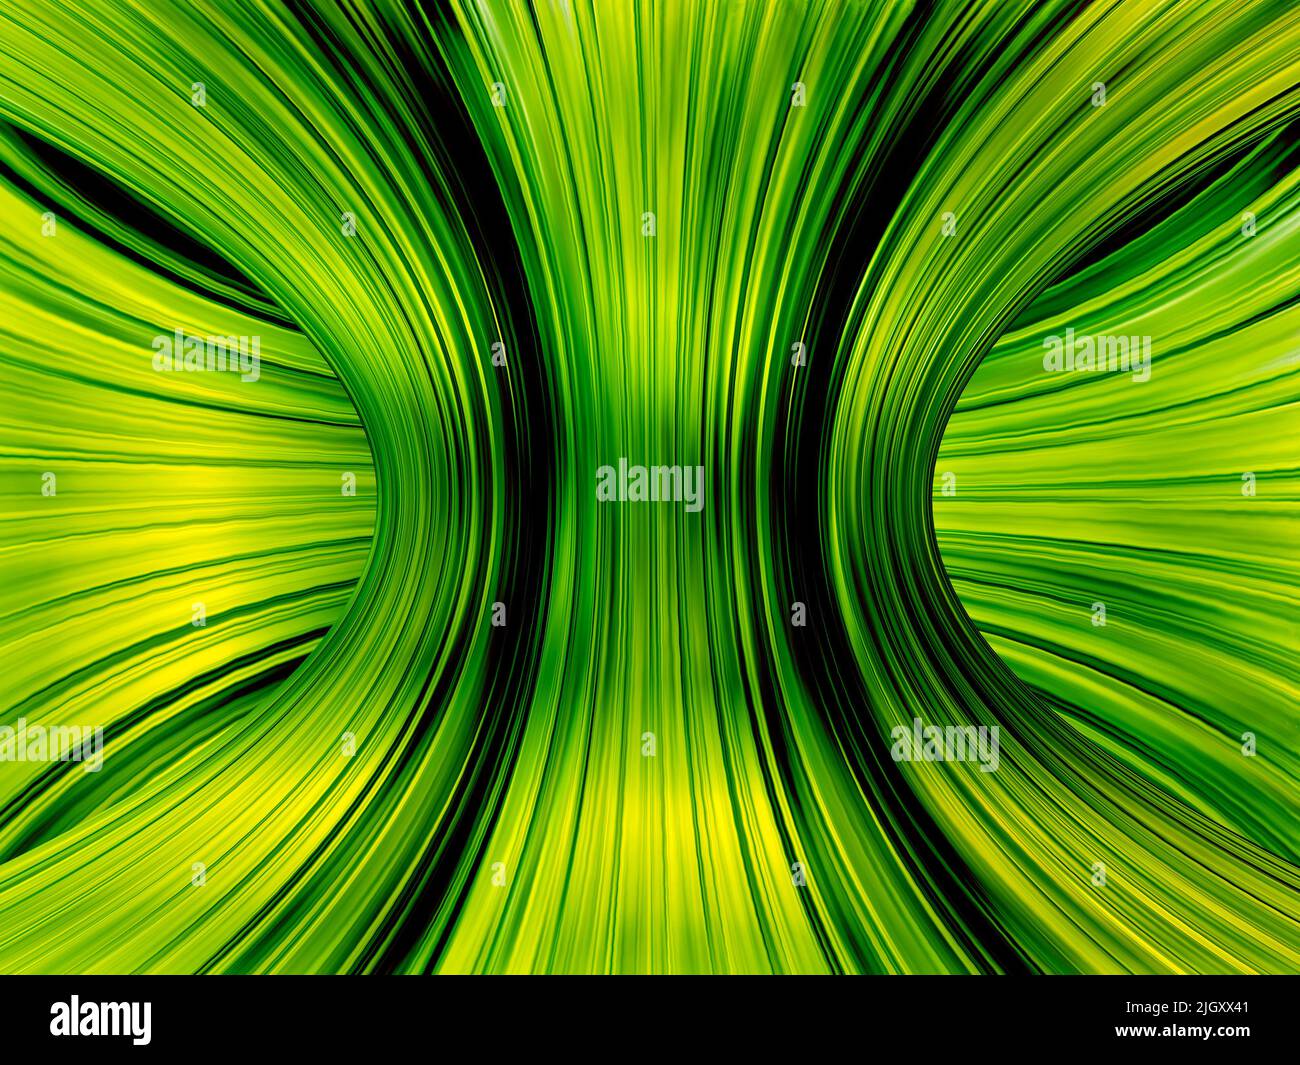 Abstrakter Hintergrund mit unendlichen Lichtspuren von grüner Farbe. Stockfoto